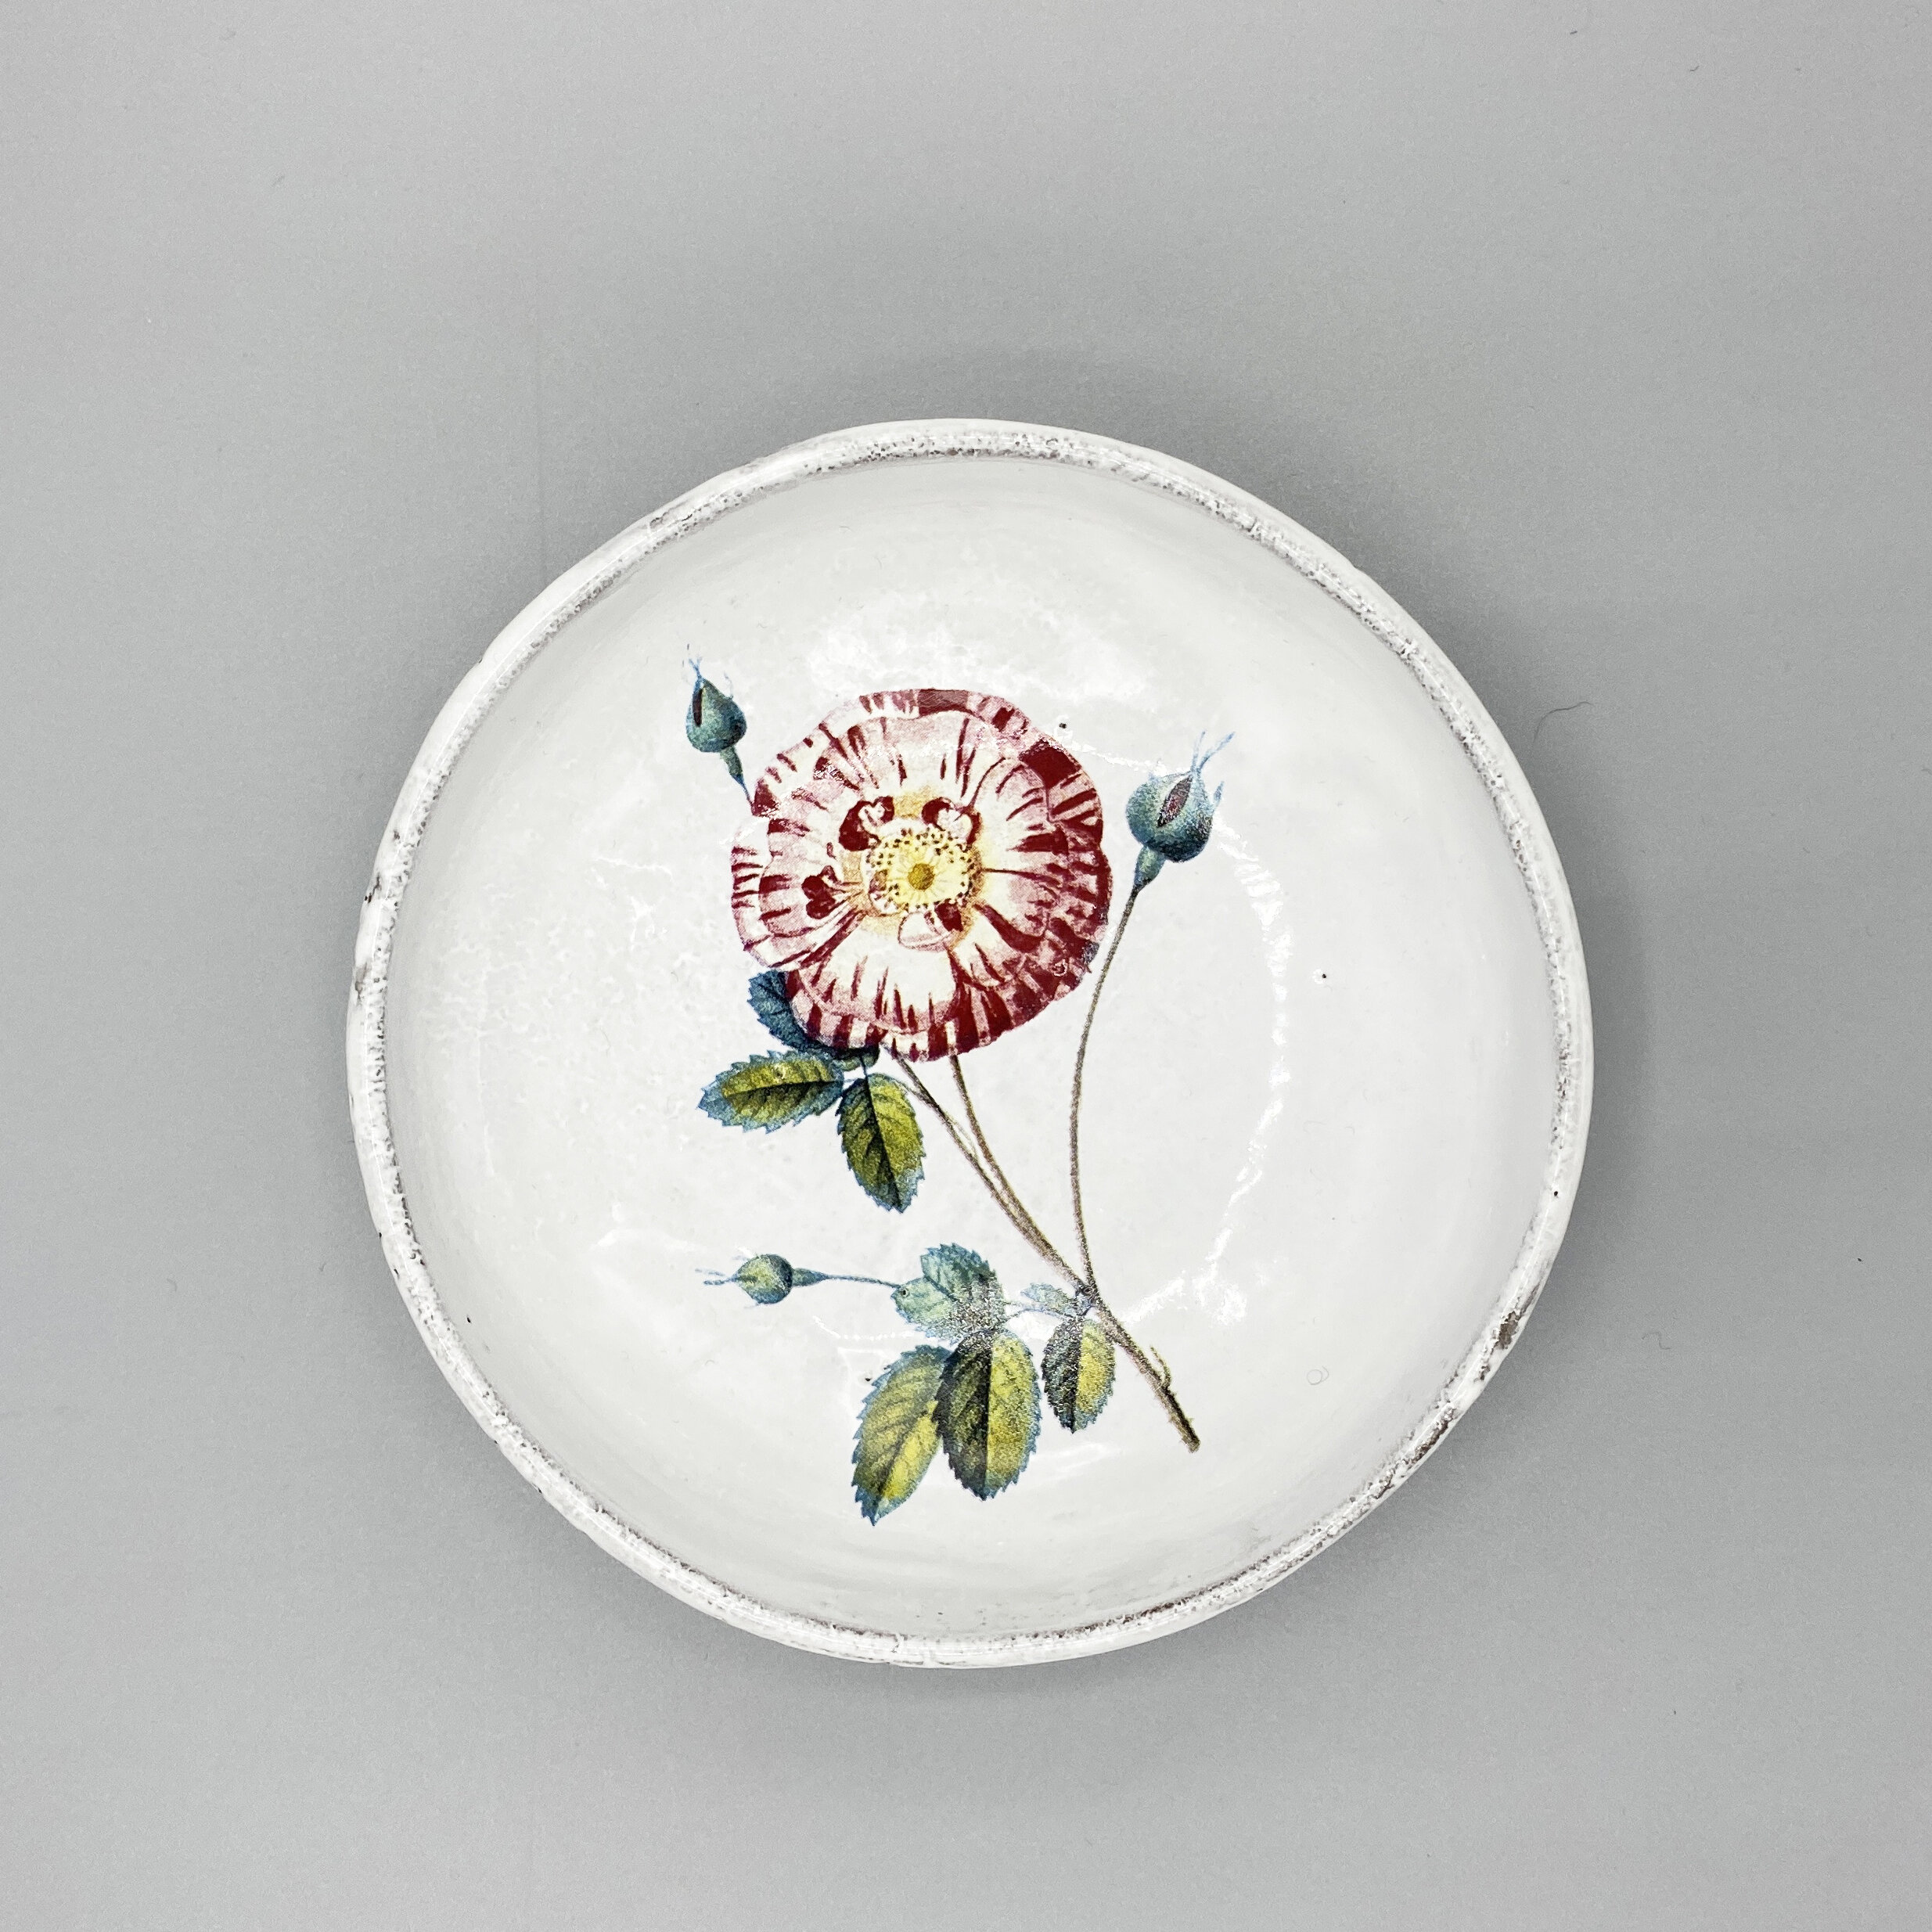 Astier de Villatte and John Derian Small Platter with Flower — CHEZ DEDE